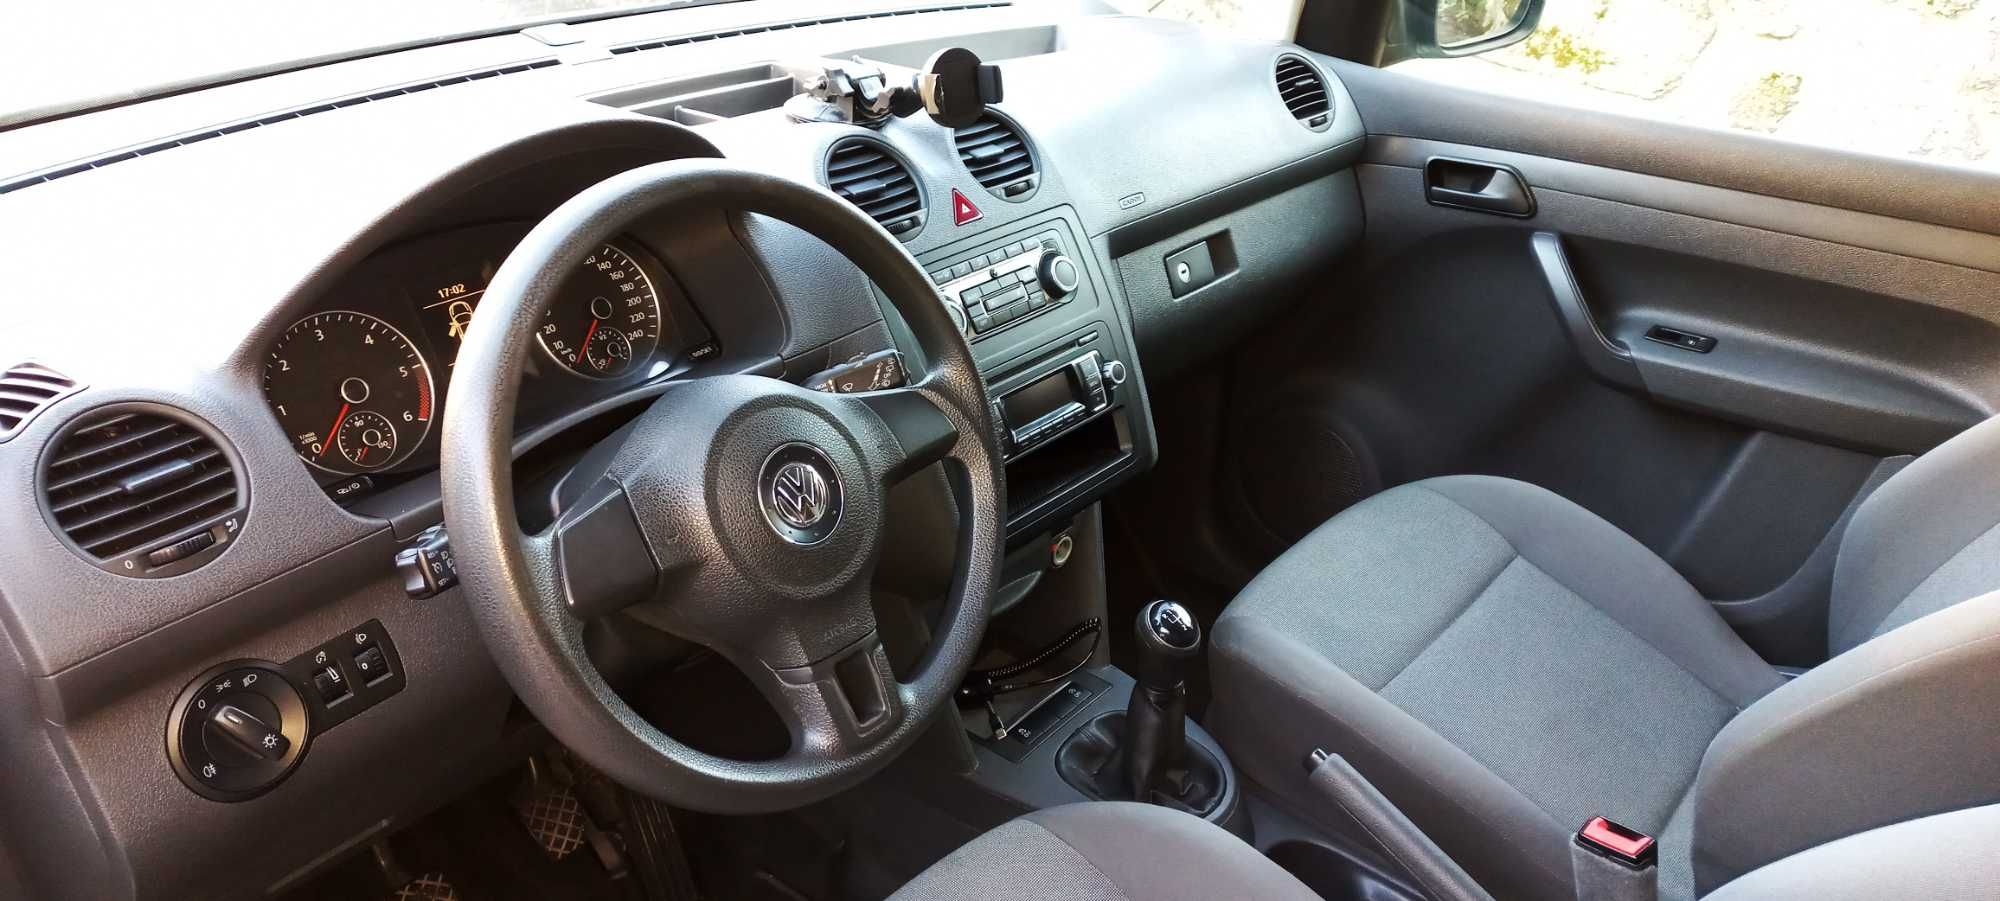 VW Caddy 1.6 Tdi versão muito rara com 101CV e Girafon.